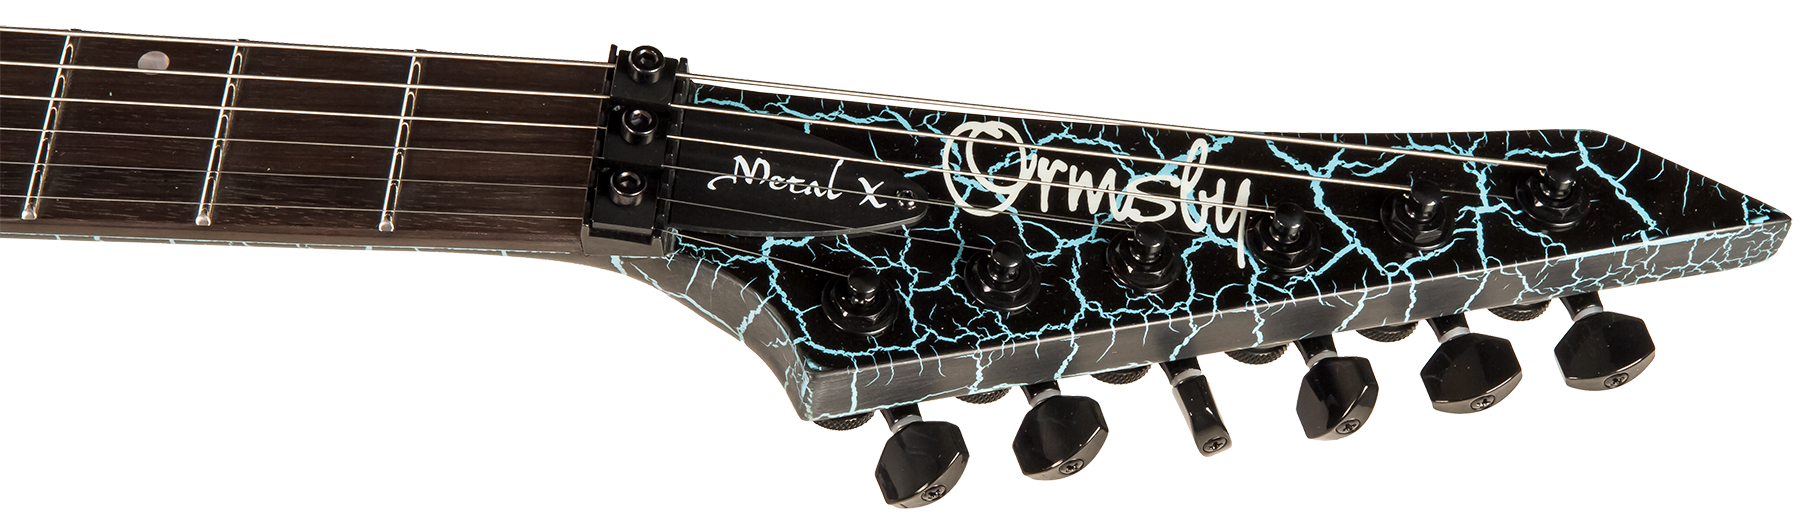 Ormsby Metal X 6 Hh Fr Eb - Azure Crackle - Guitare Électrique MÉtal - Variation 4